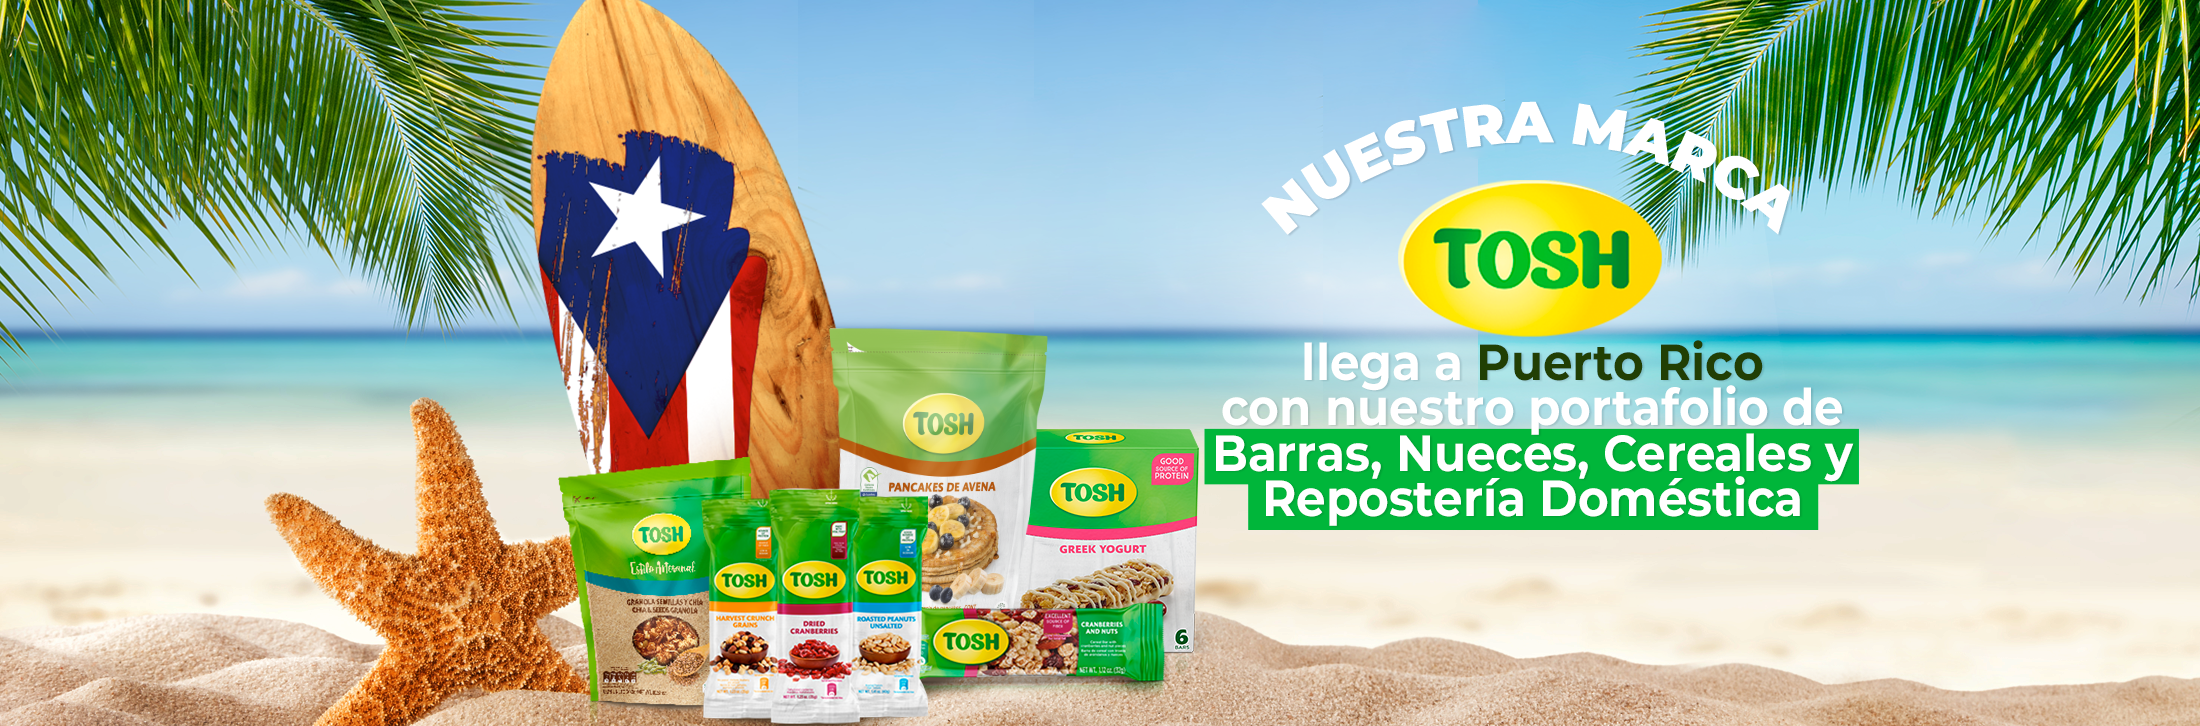 Nuestra marca TOSH llega a Puerto Rico con cuatro categorías de producto